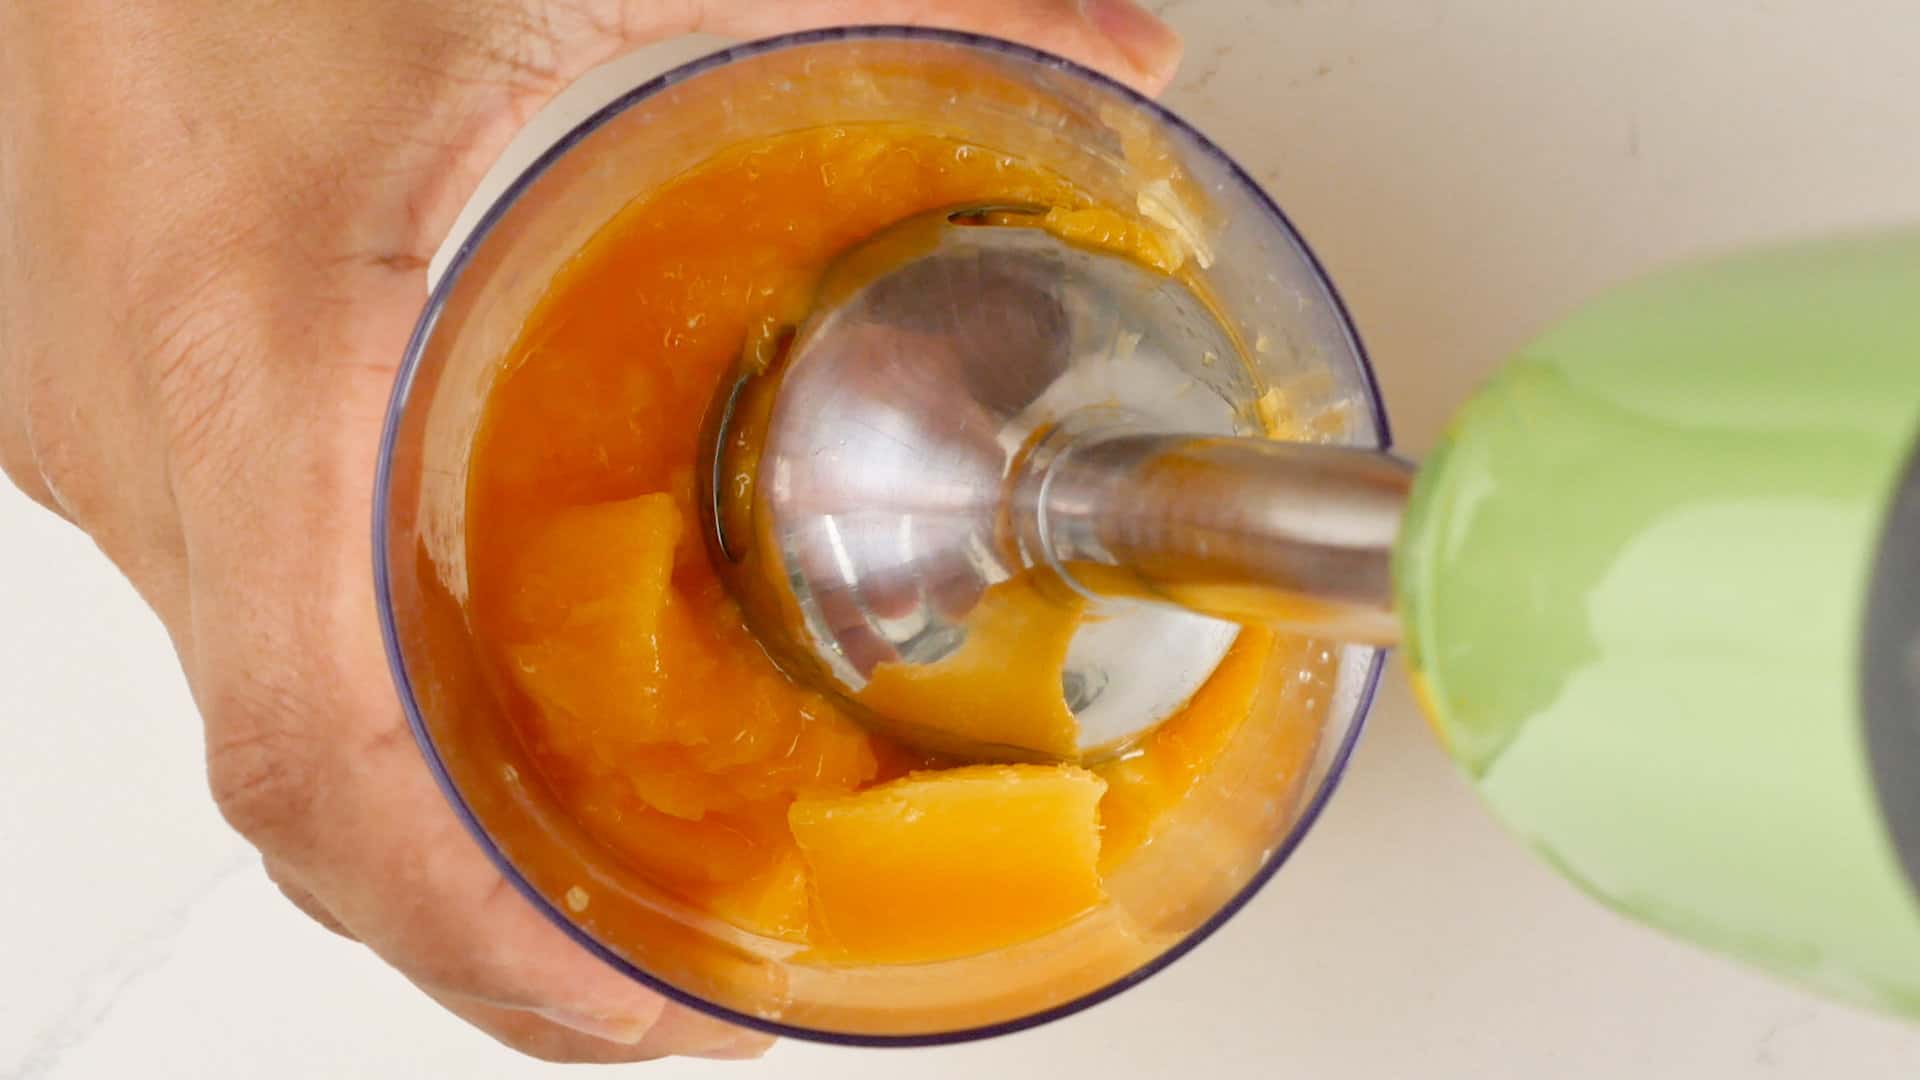 Making the mango juice.